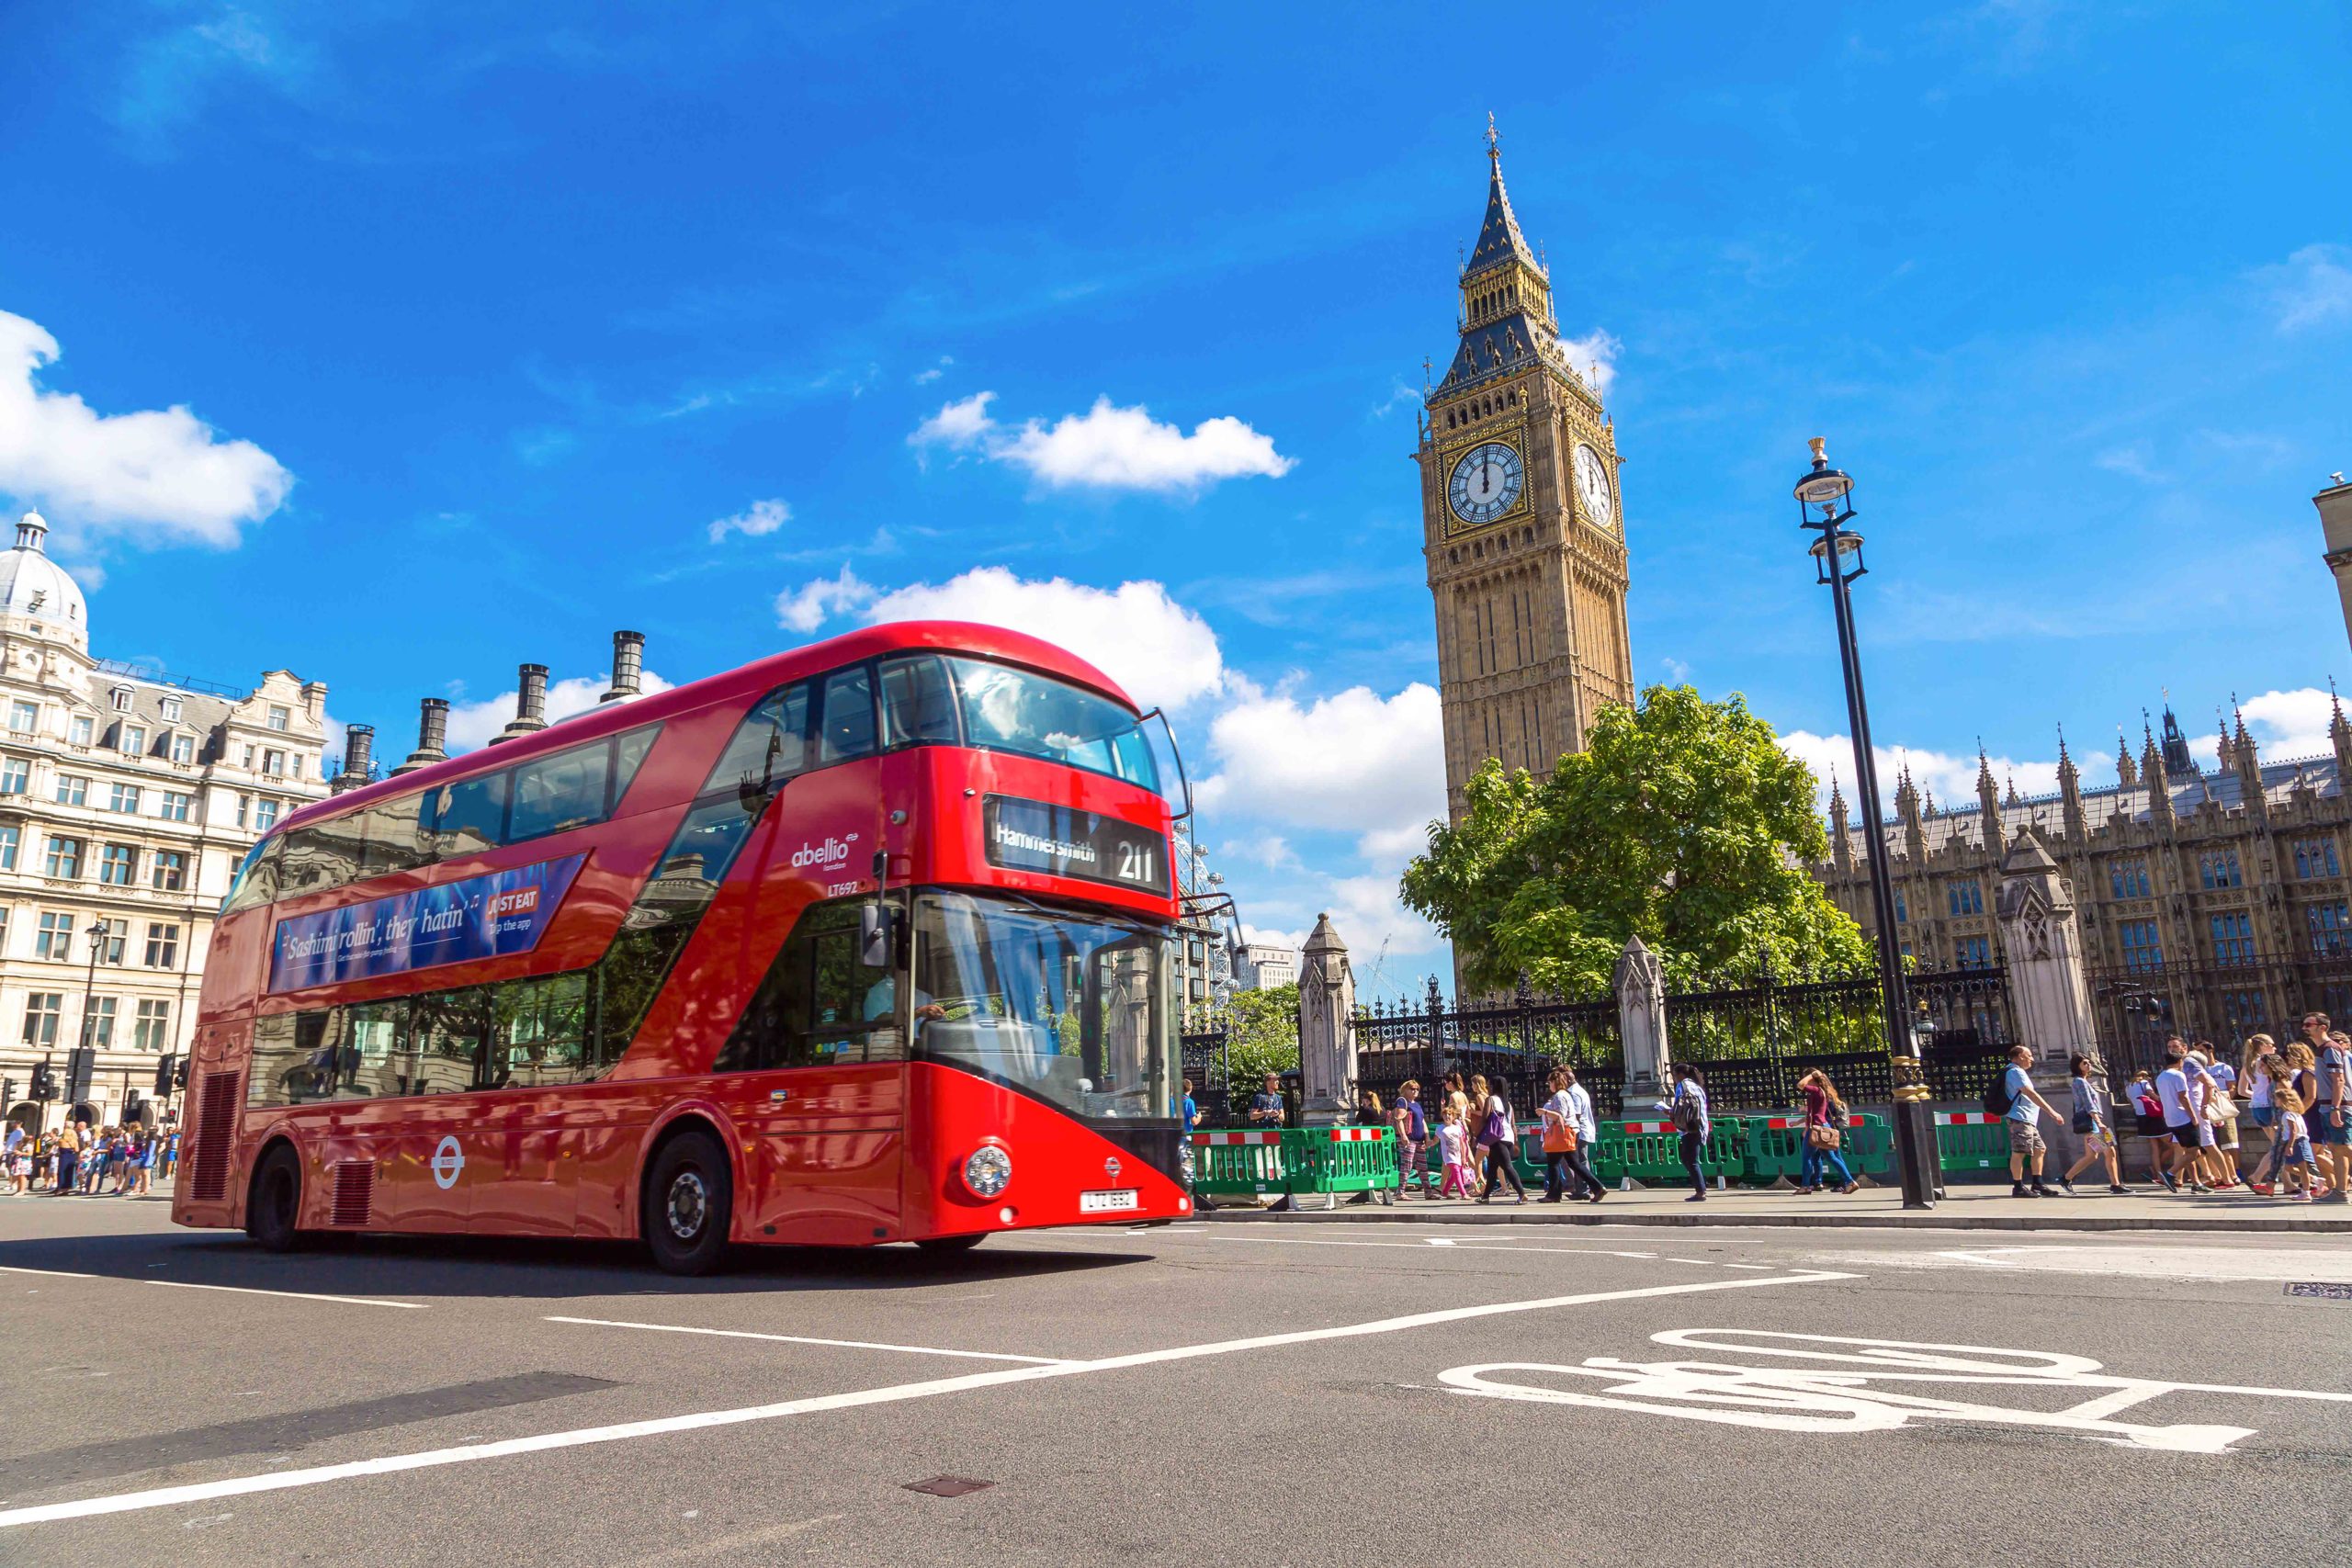 Big Ben and London Bus.Source: Depositphotos.com